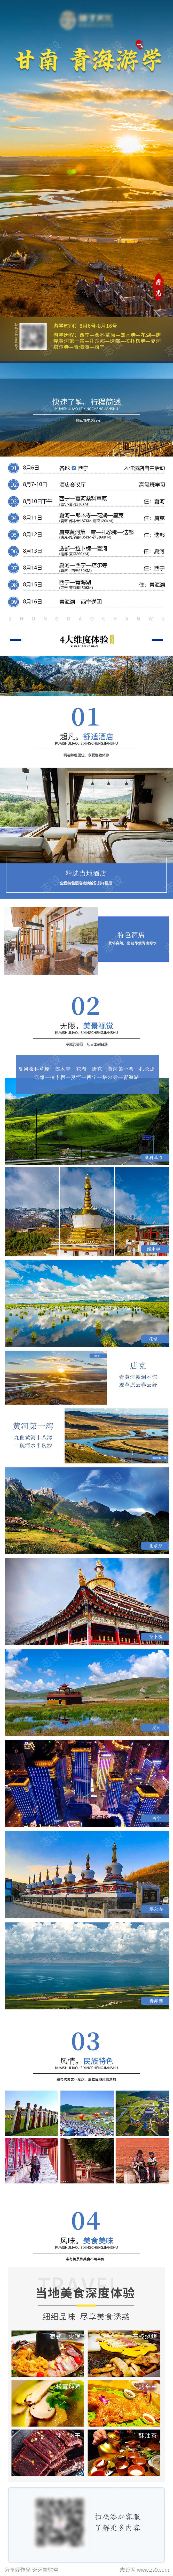 甘南青海旅游游学详情页海报